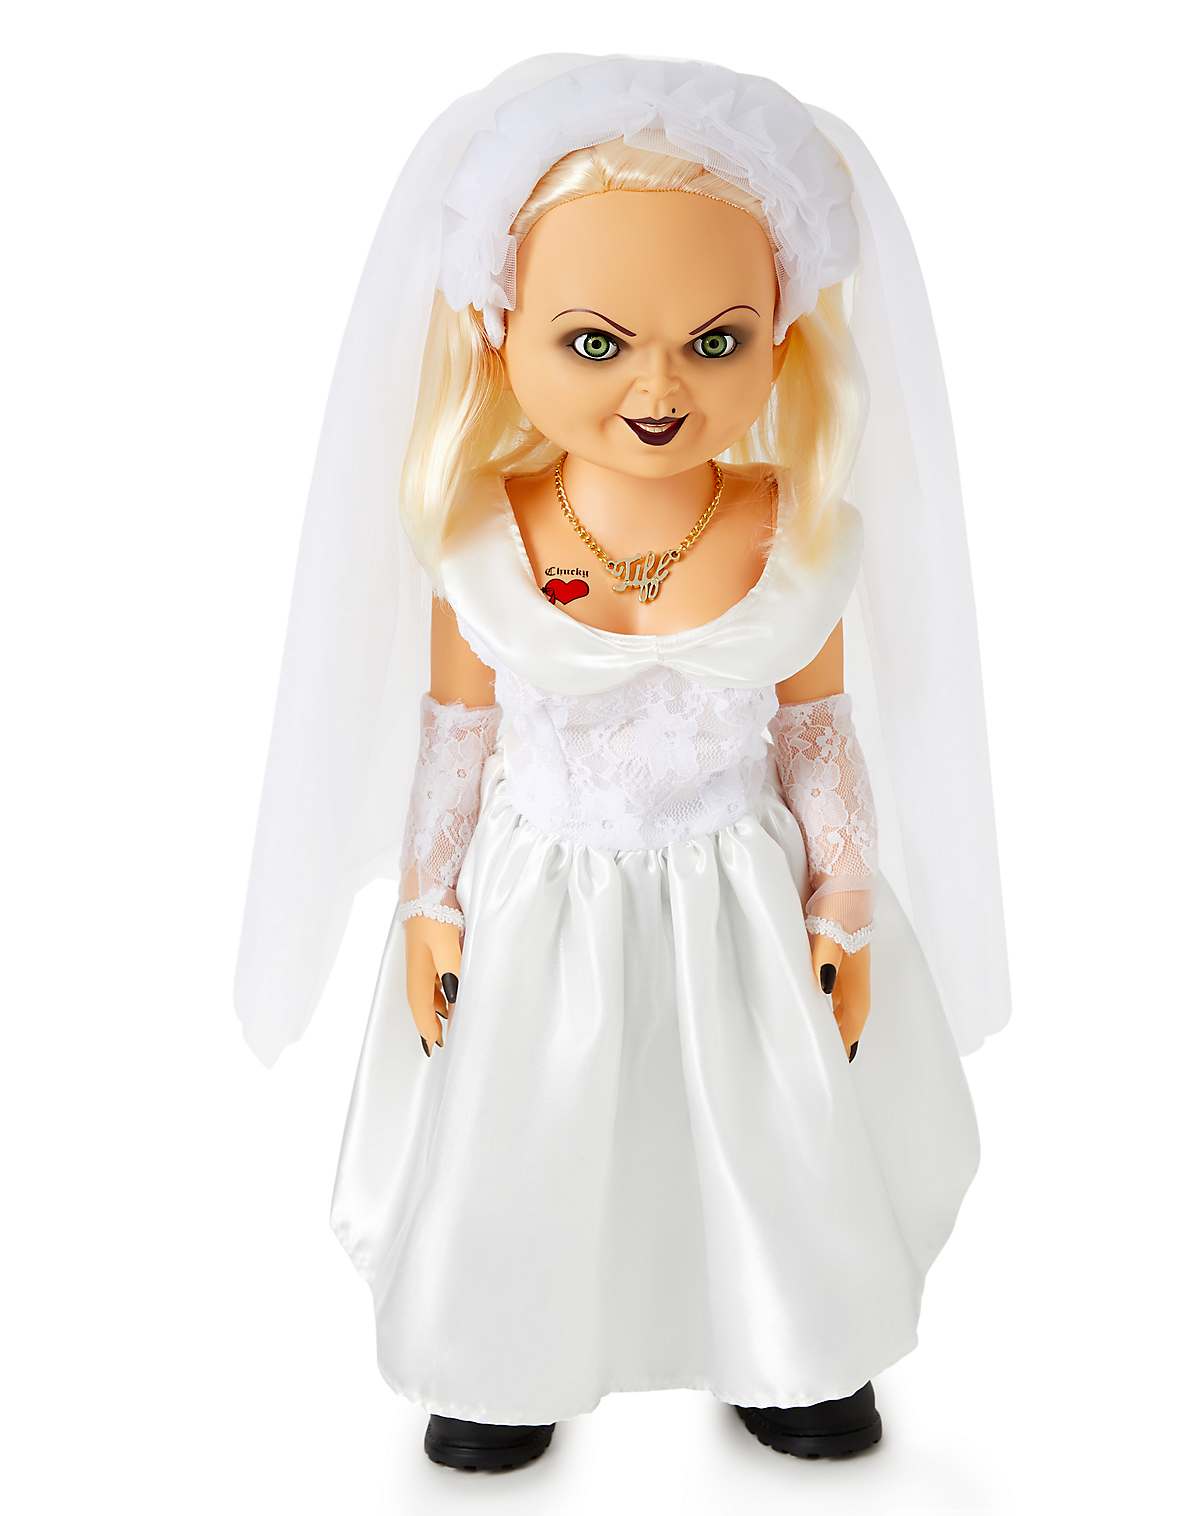 Bride of Chucky Tiffany Doll